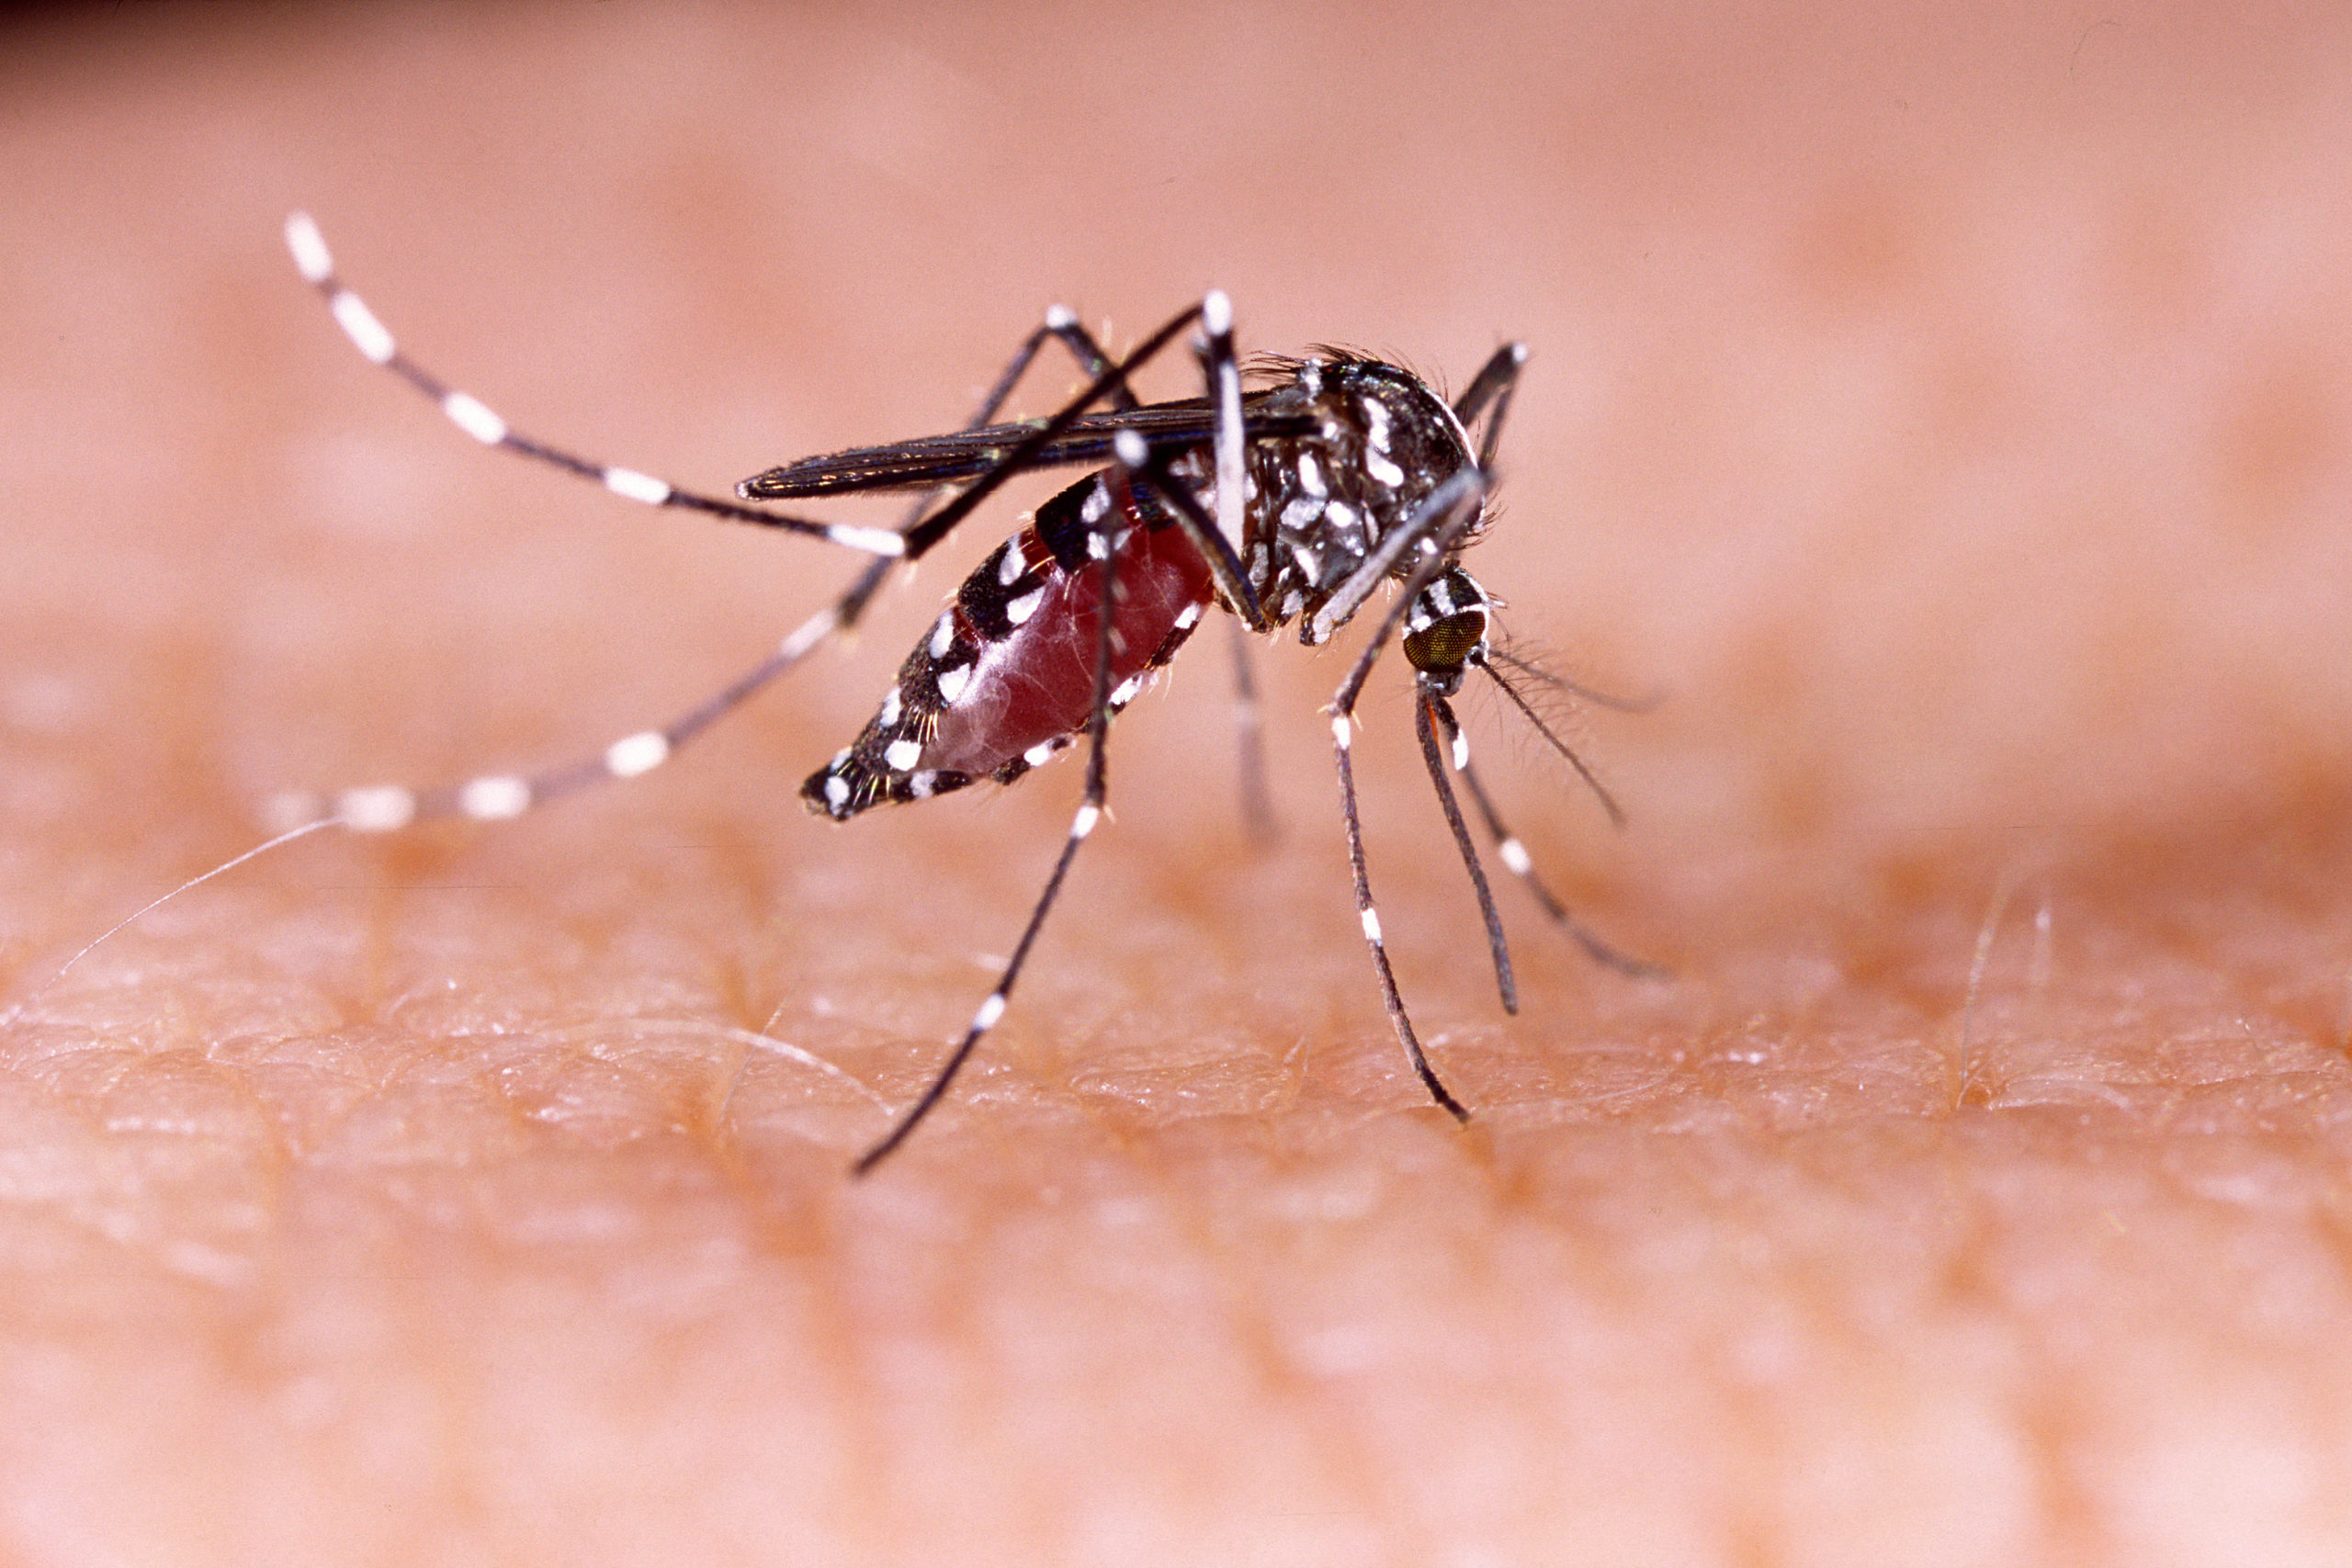 Moustique tigre : deux premiers cas de dengue détectés dans les